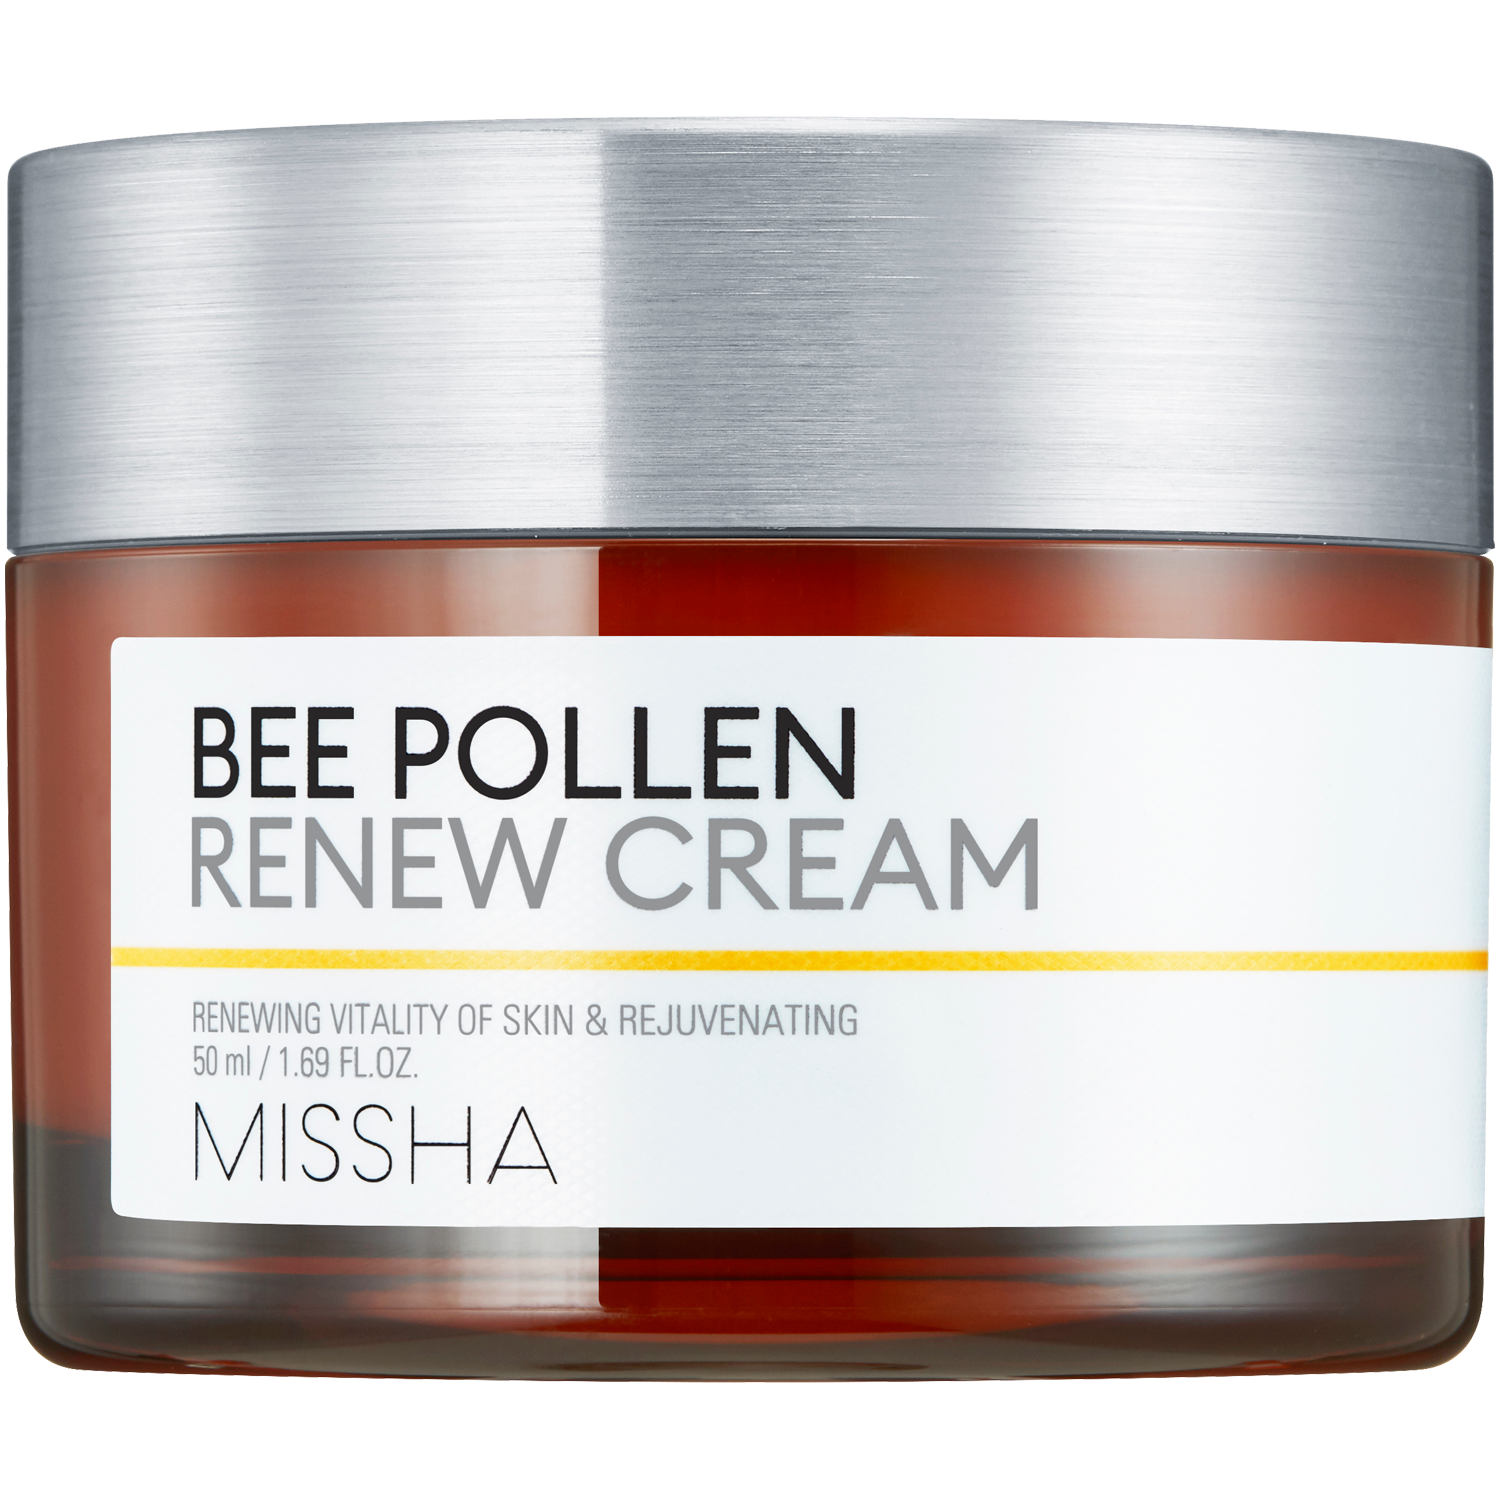 Missha Bee Pollen Renew крем для лица, 50 мл missha сыворотка для лица renew ampouler 40 мл missha bee pollen